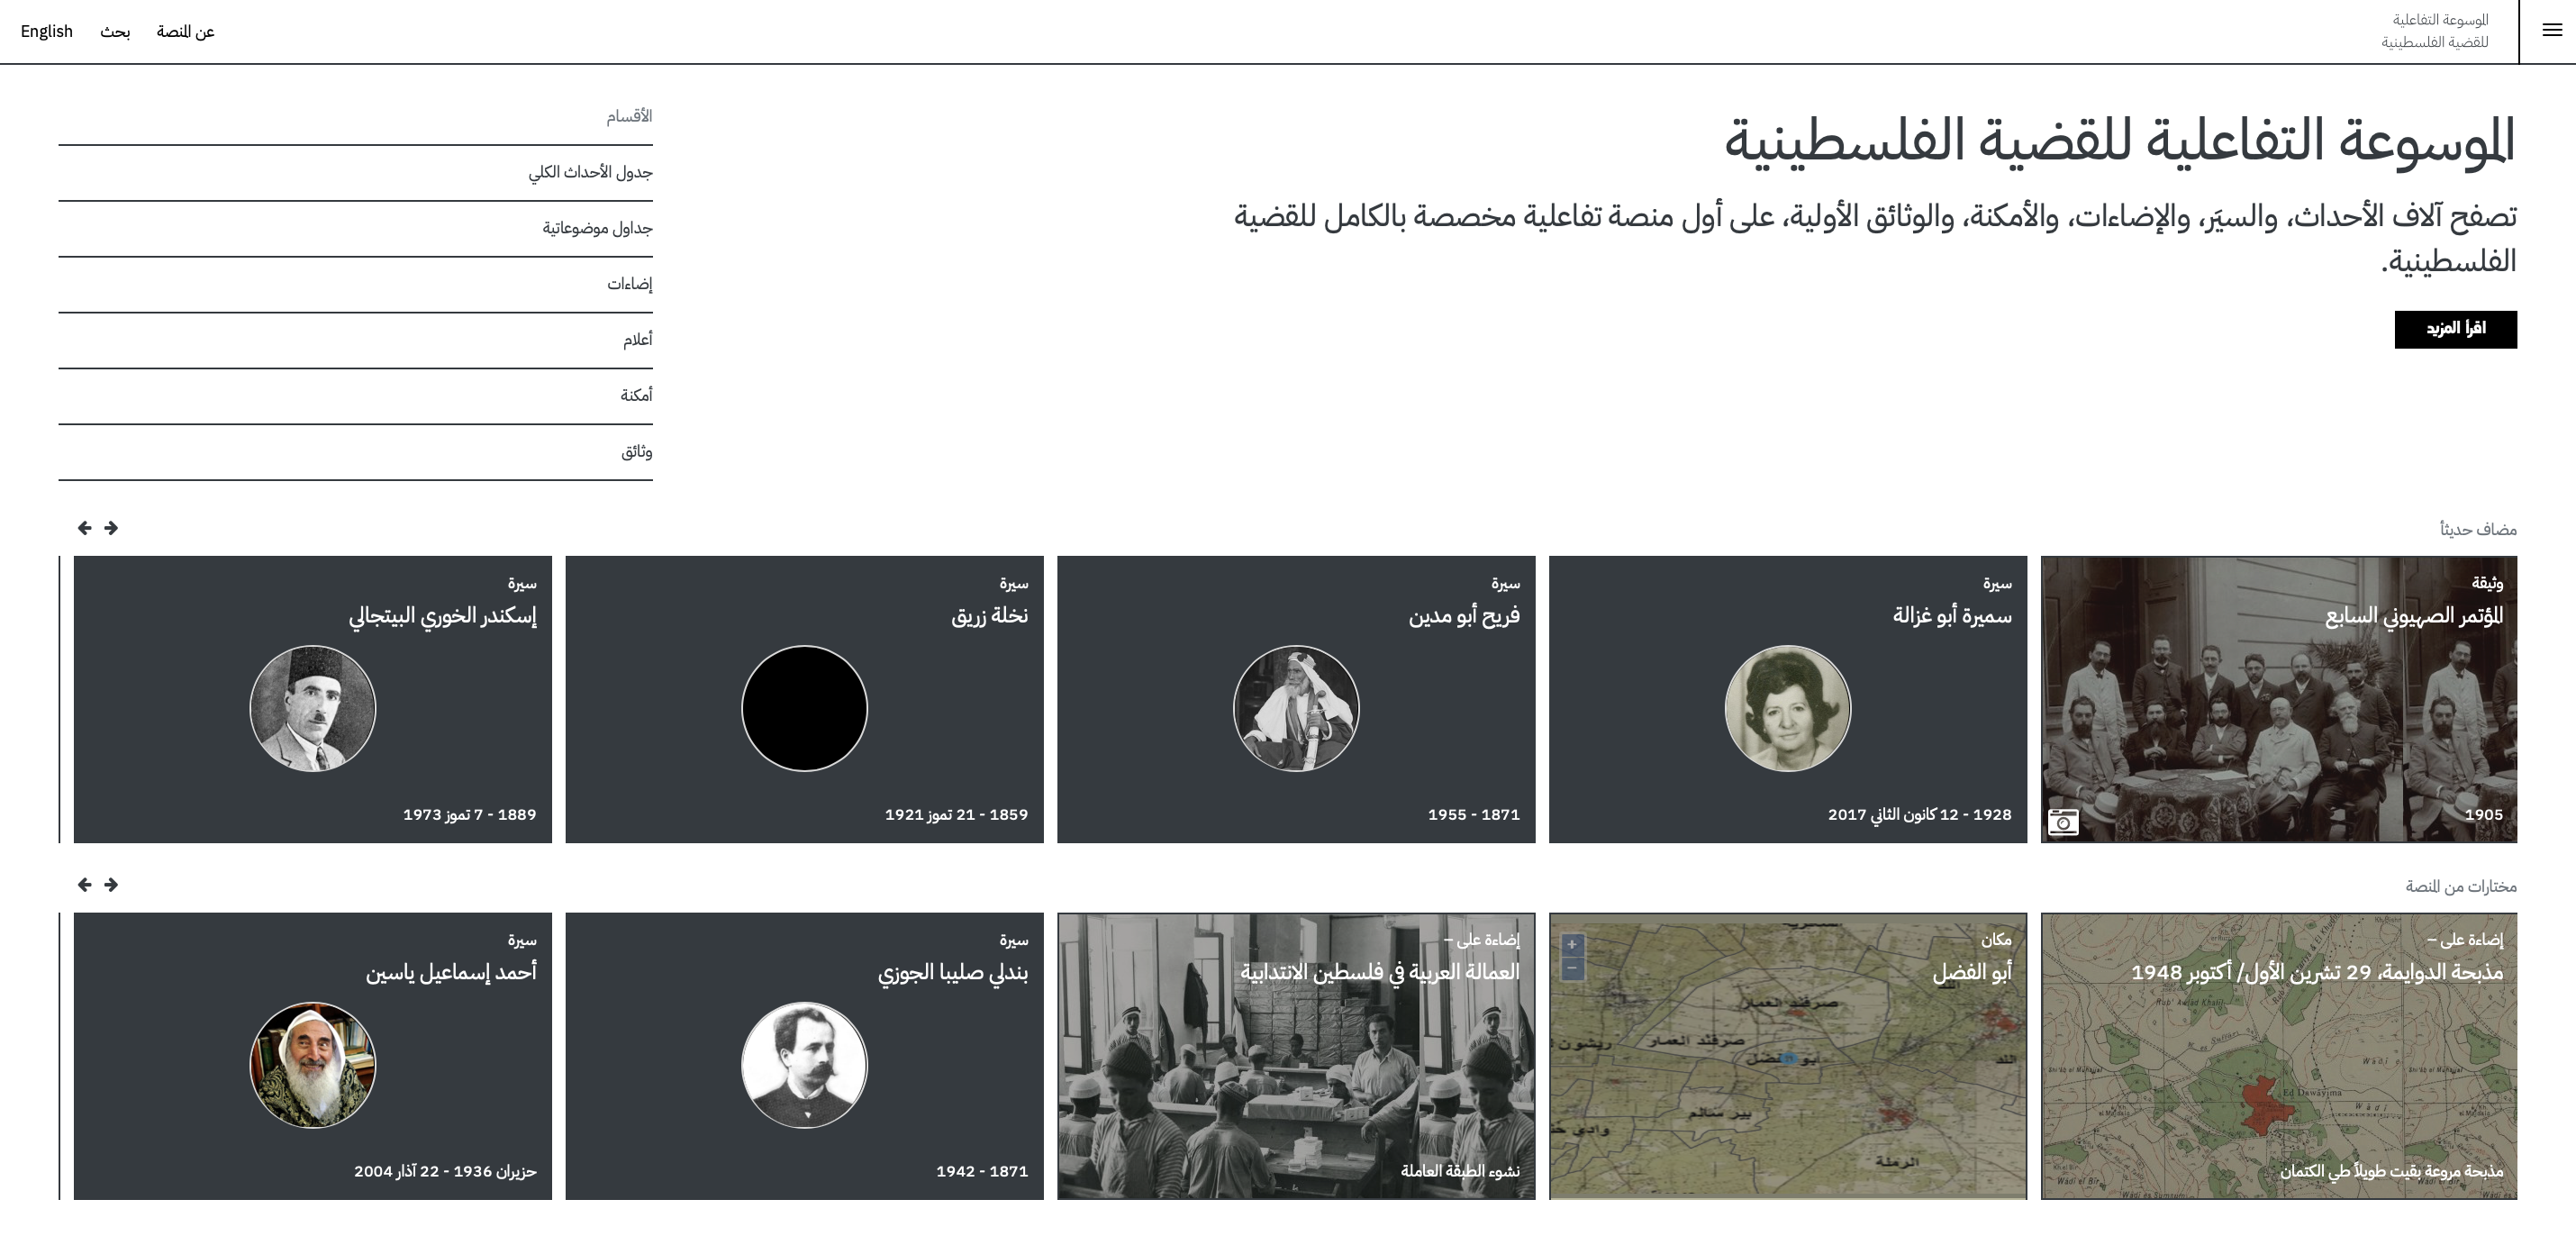 مؤسّسة الدراسات الفلسطينيّة والمتحف الفلسطيني يُطلقان الموسوعة التفاعليّة للقضيّة الفلسطينيّة